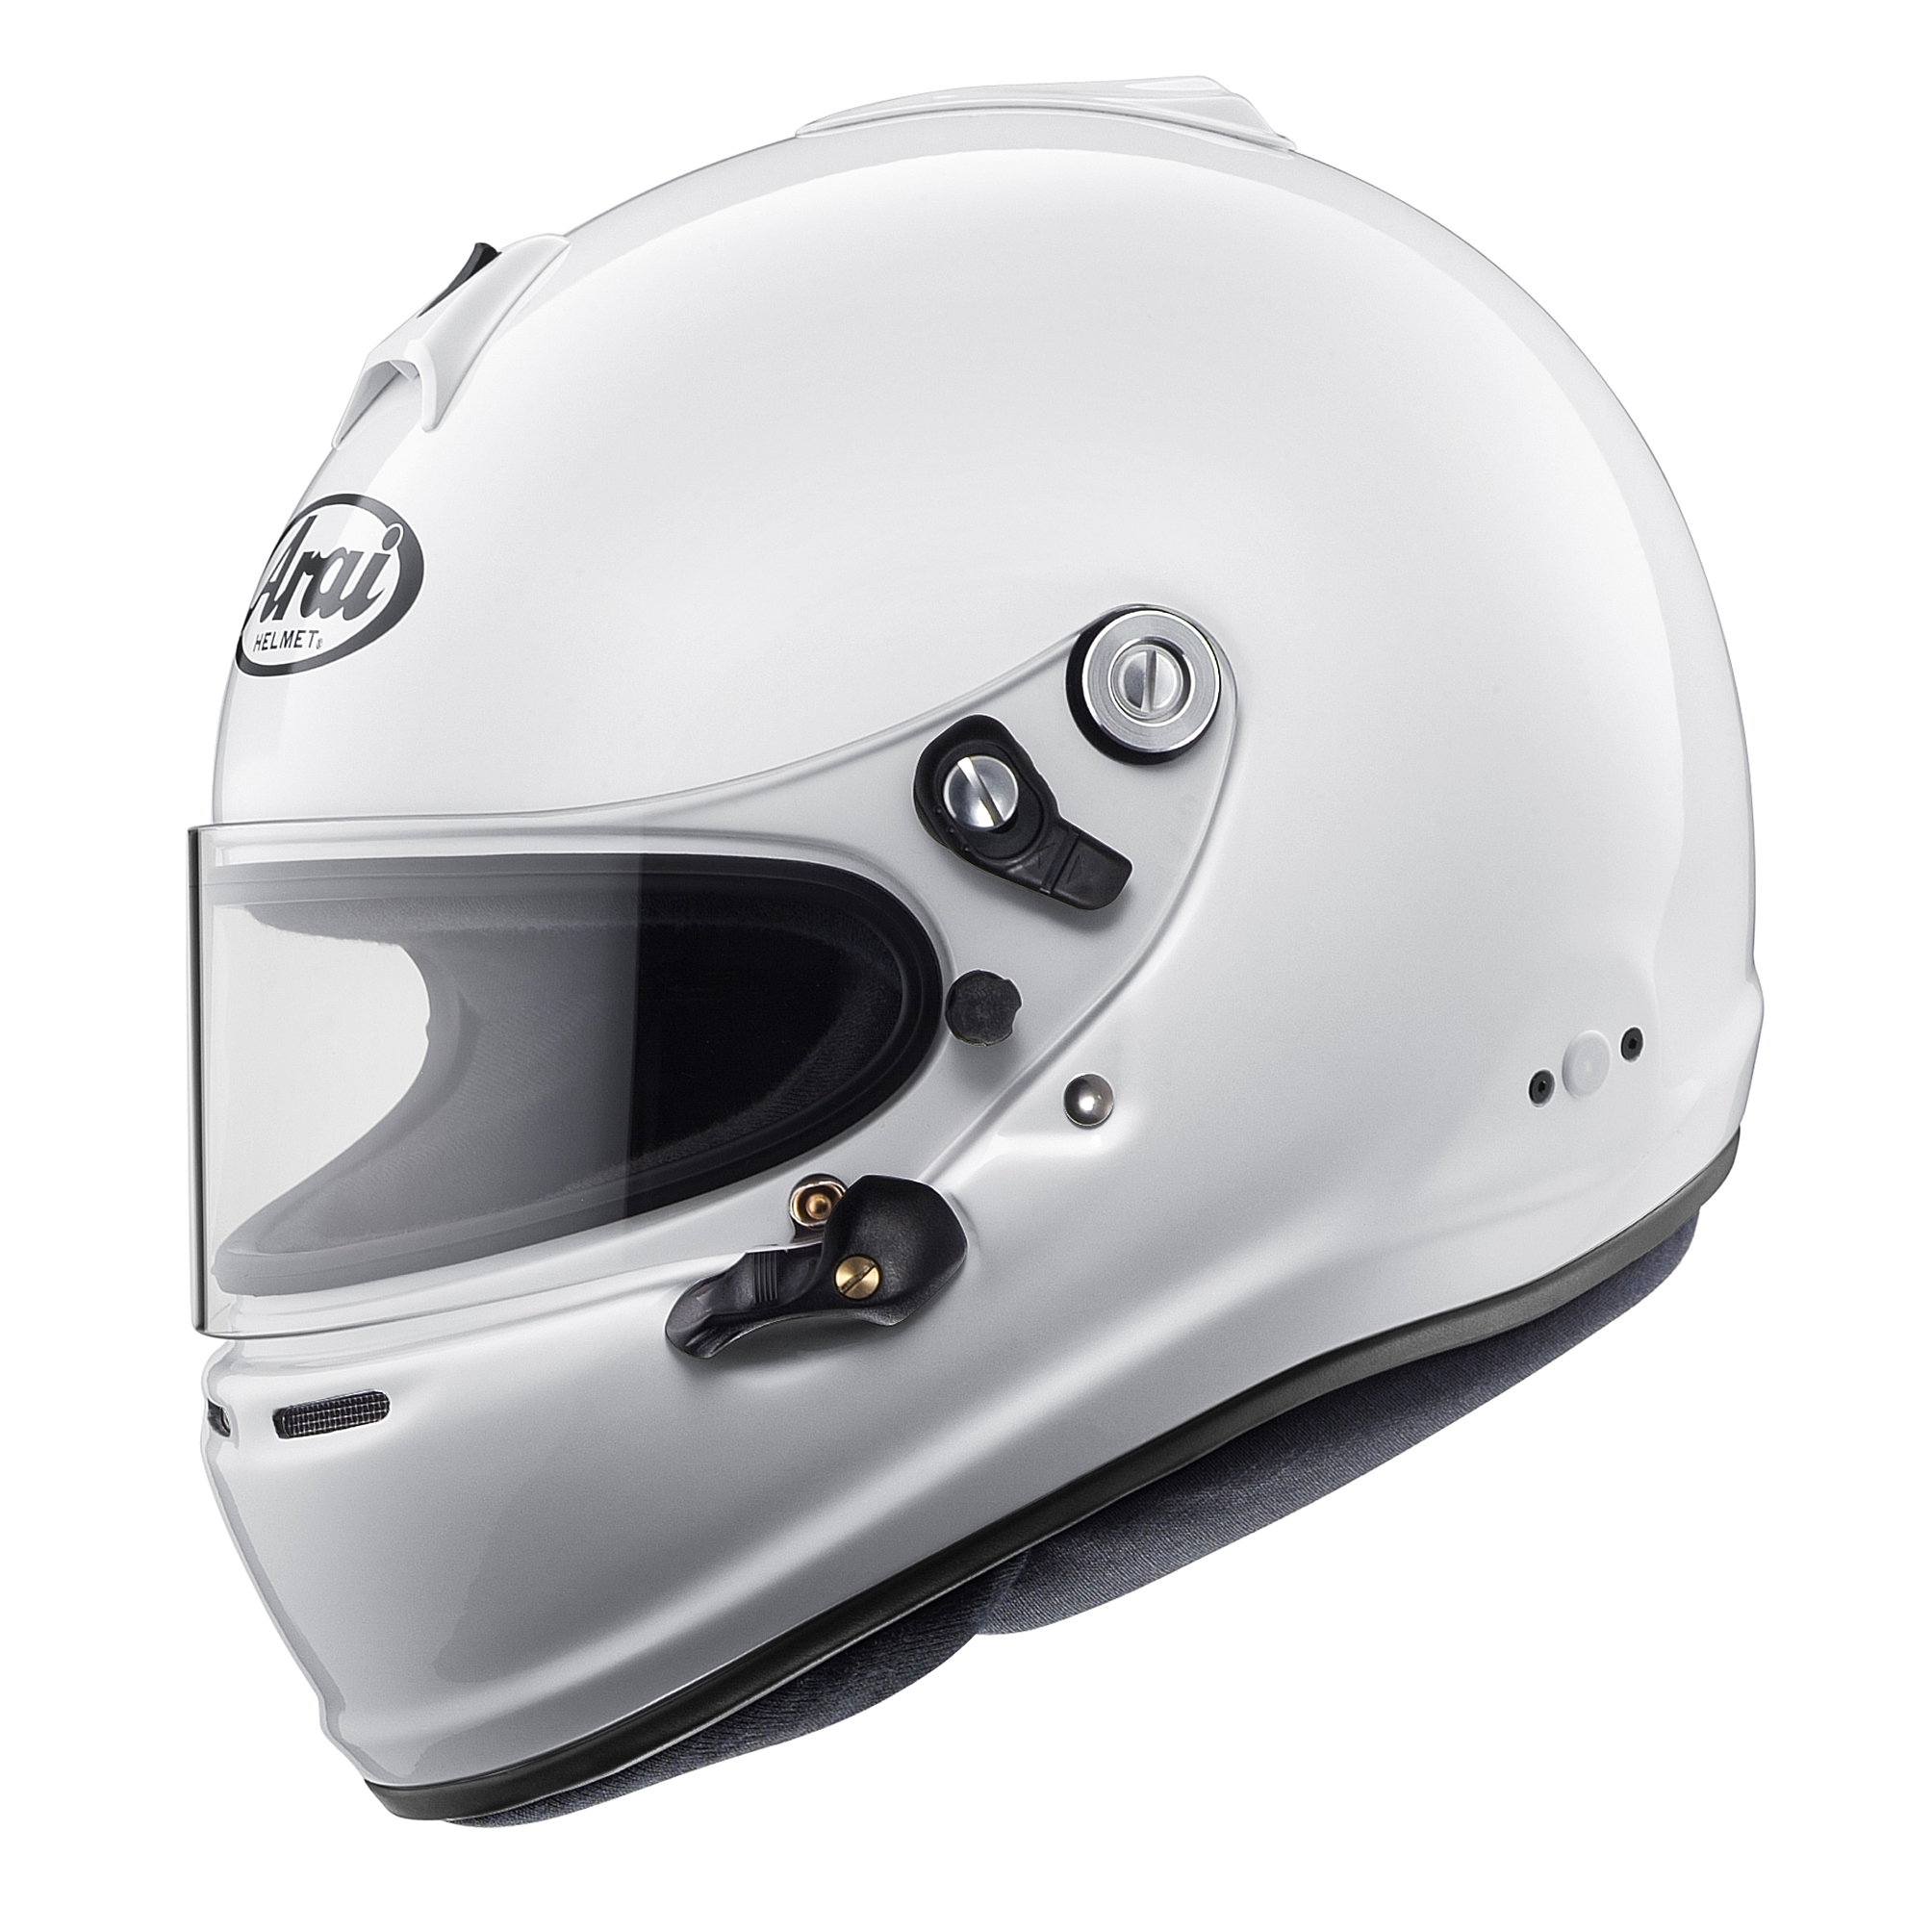 Køb din Arai GP-6S hjelm hos Freem til de bedste priser.